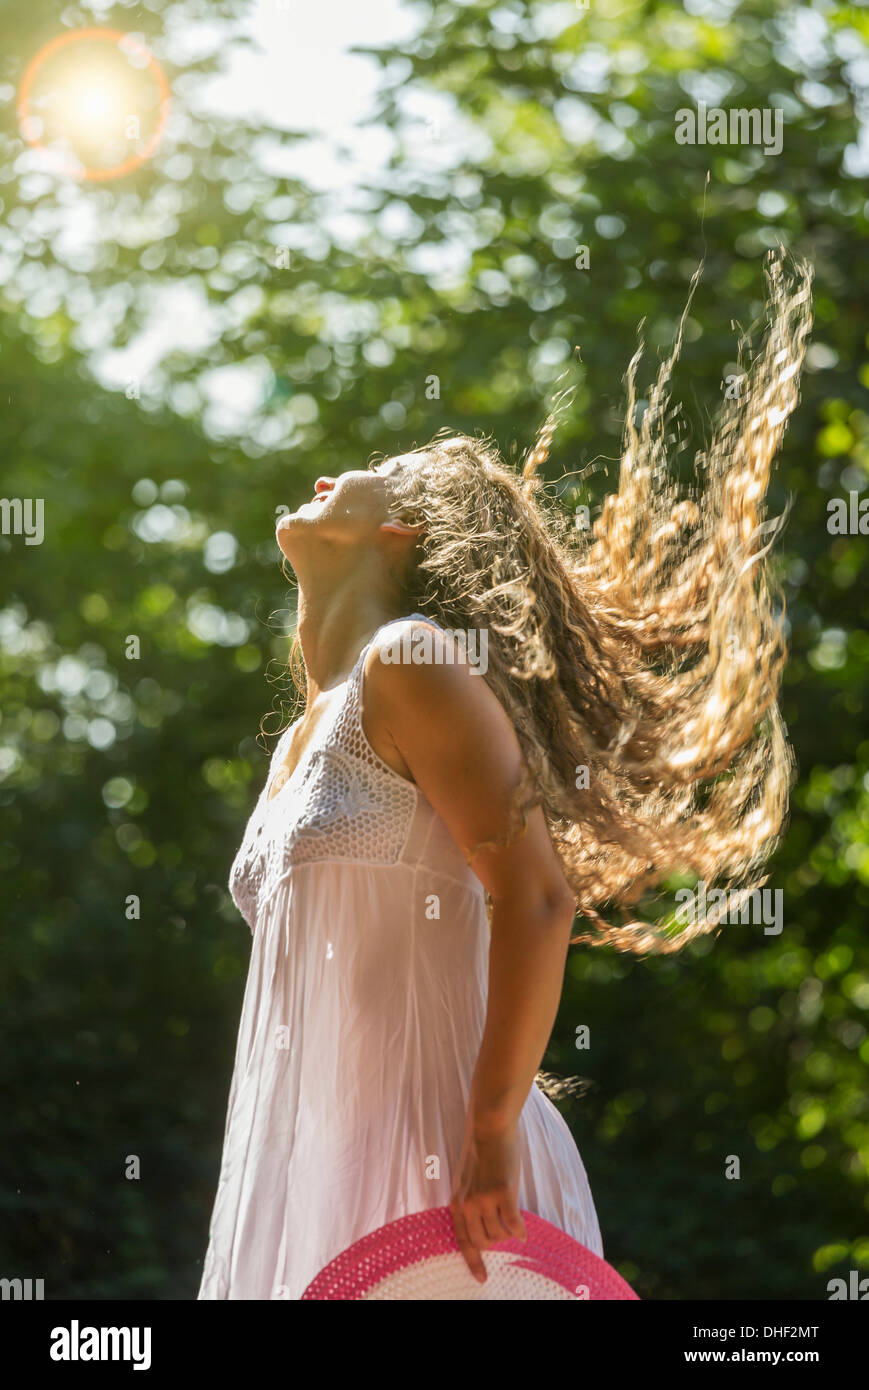 Adolescente vestidas de blanco sundress sacudiendo el pelo largo, Praga, República Checa Foto de stock